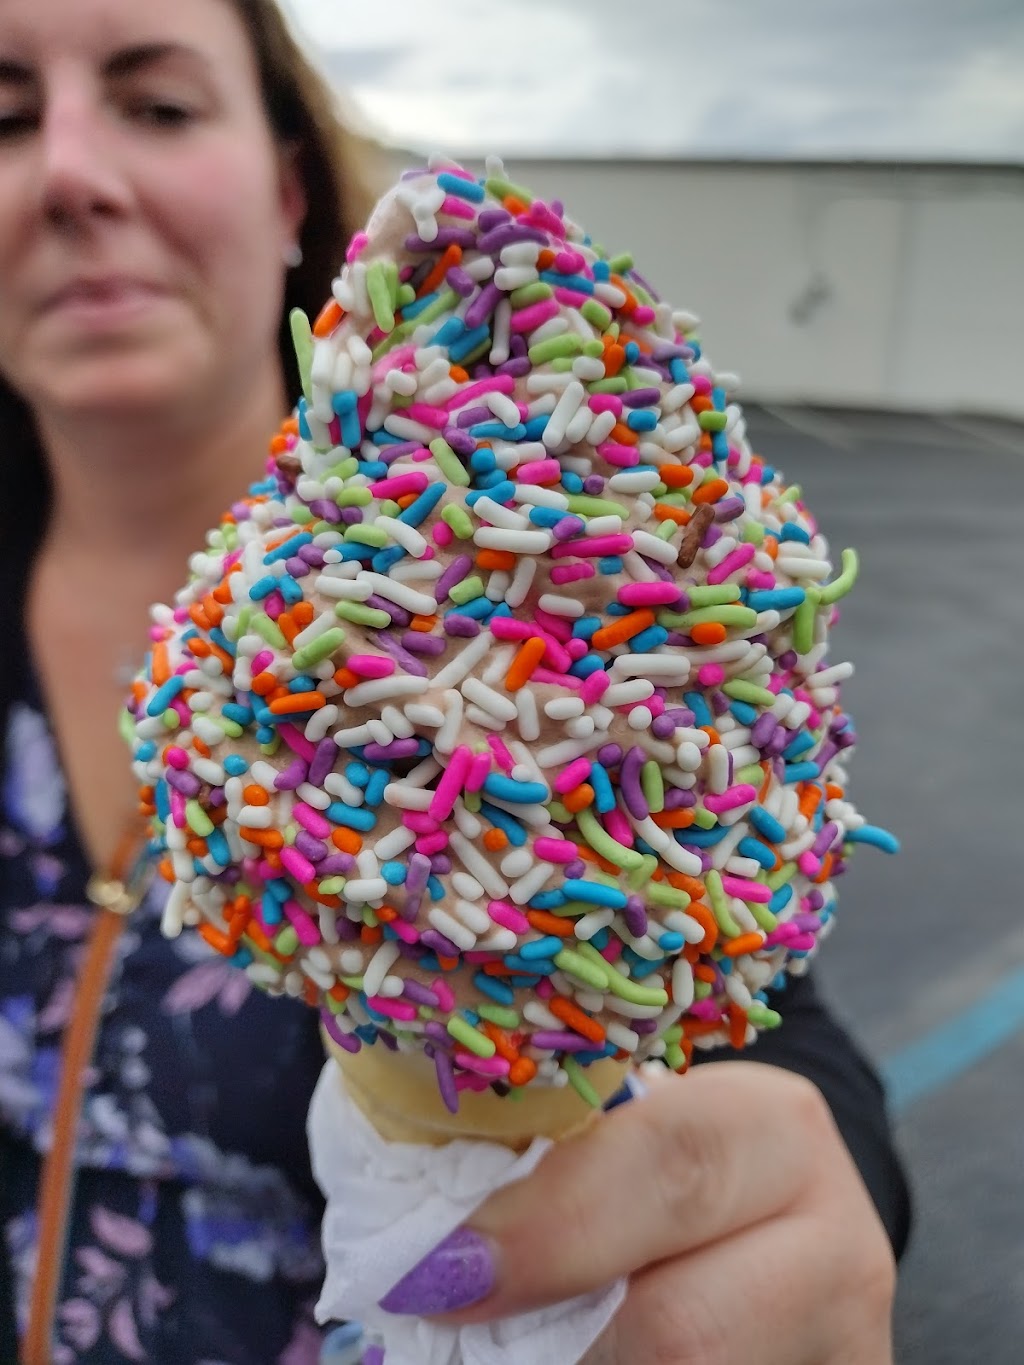 Mister Softee Ice Cream Store | 3605 Haddonfield Rd, Pennsauken Township, NJ 08109 | Phone: (856) 662-3787